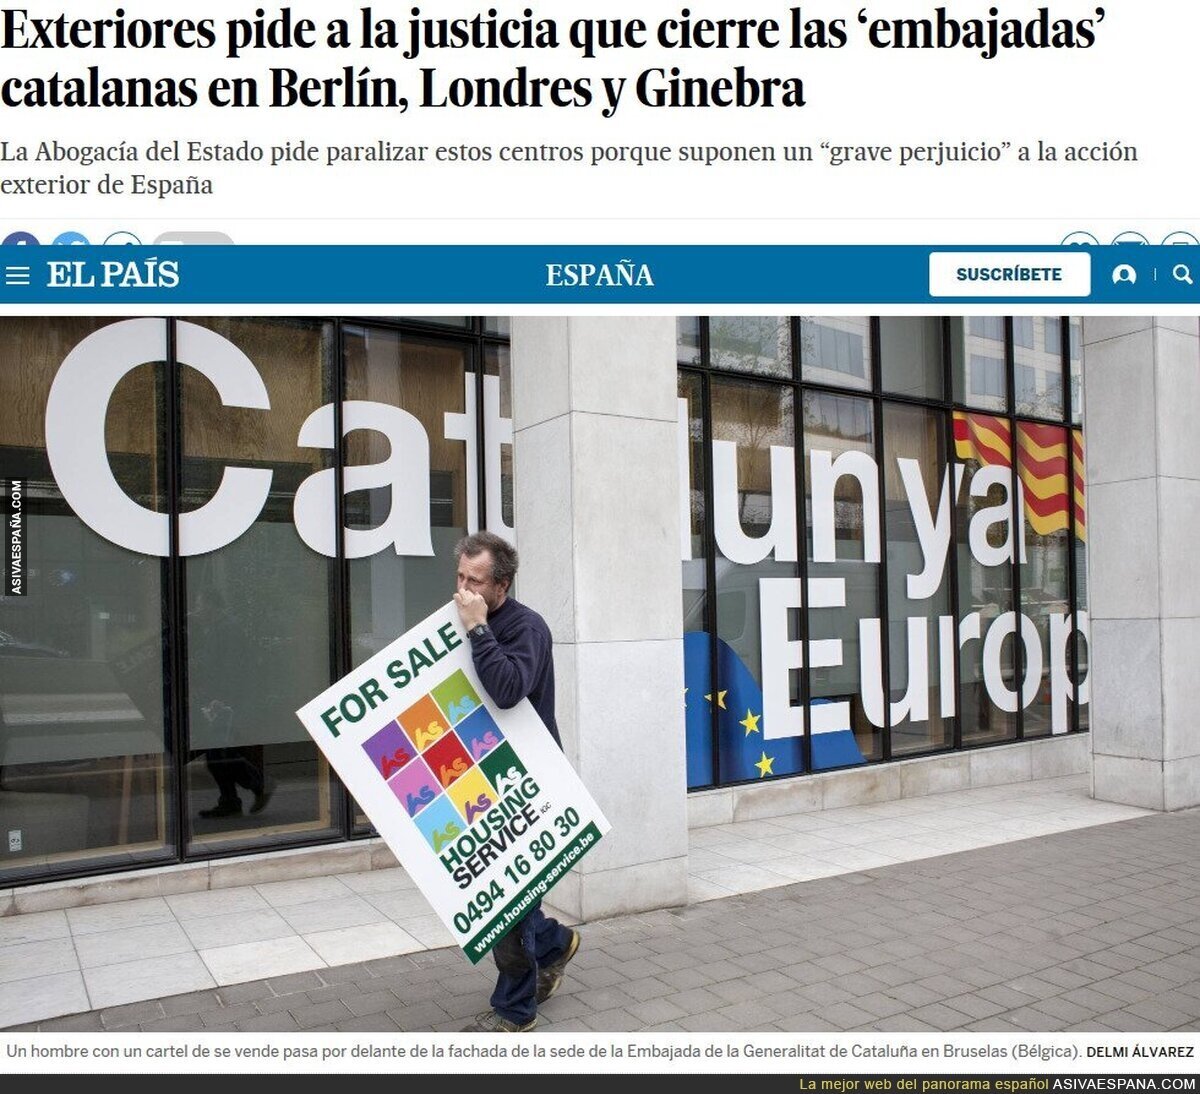 El "Chiringuito catalán" está muriendo a pasos agigantados